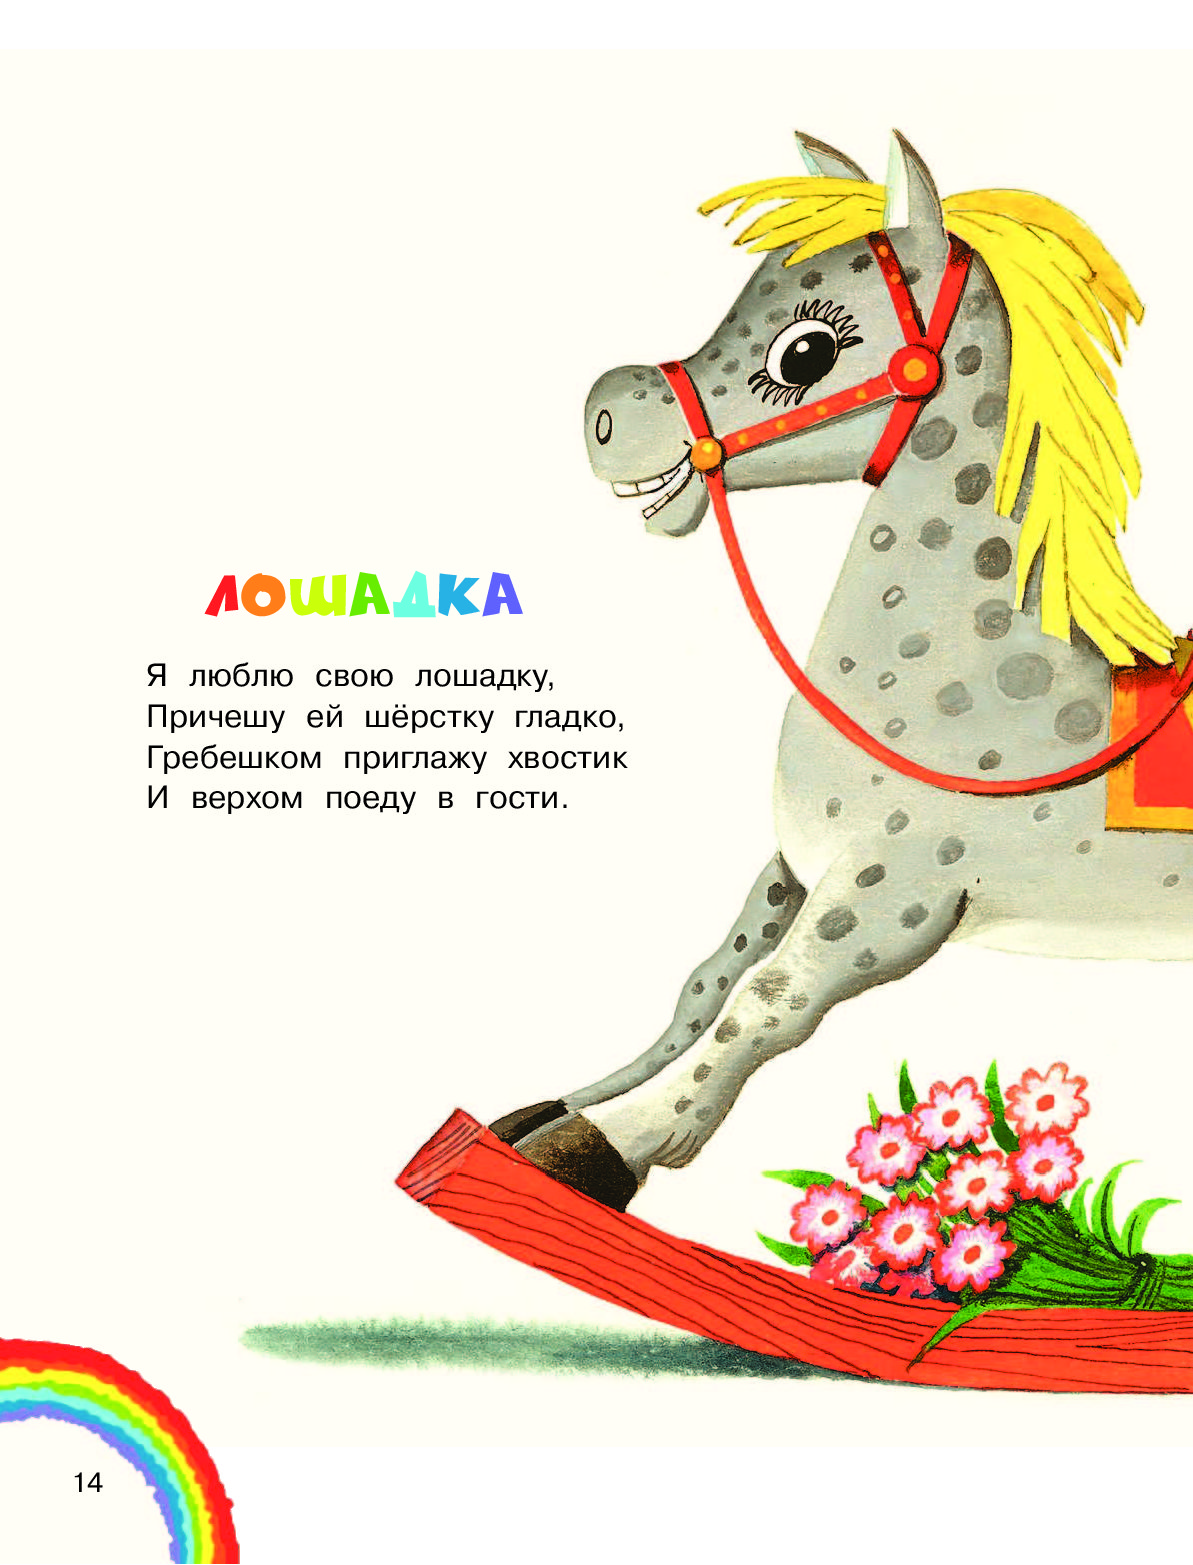 Лошадка стишок. Стихотворение про лошадку. Детские стихи про лошадку. Стих про лошадку для детей. Стихи про коня детские.